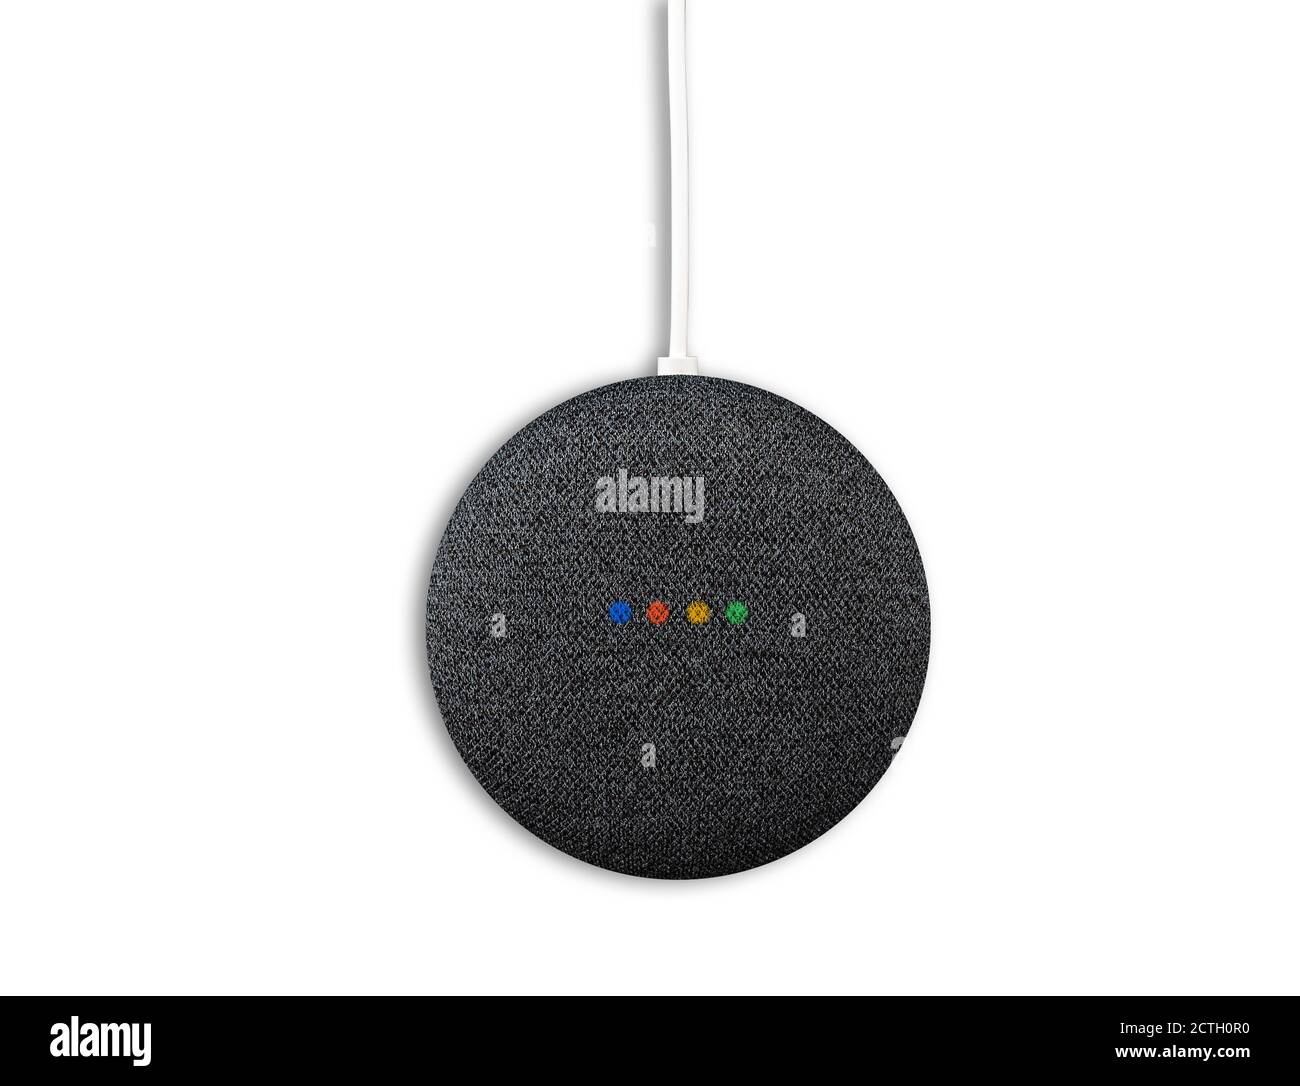 2020-09-23 Hamburg, Deutschland: Direkt über der Ansicht von Google Nest Mini Smart Speaker mit beleuchteten Status-LEDs isoliert auf weiß Stockfoto